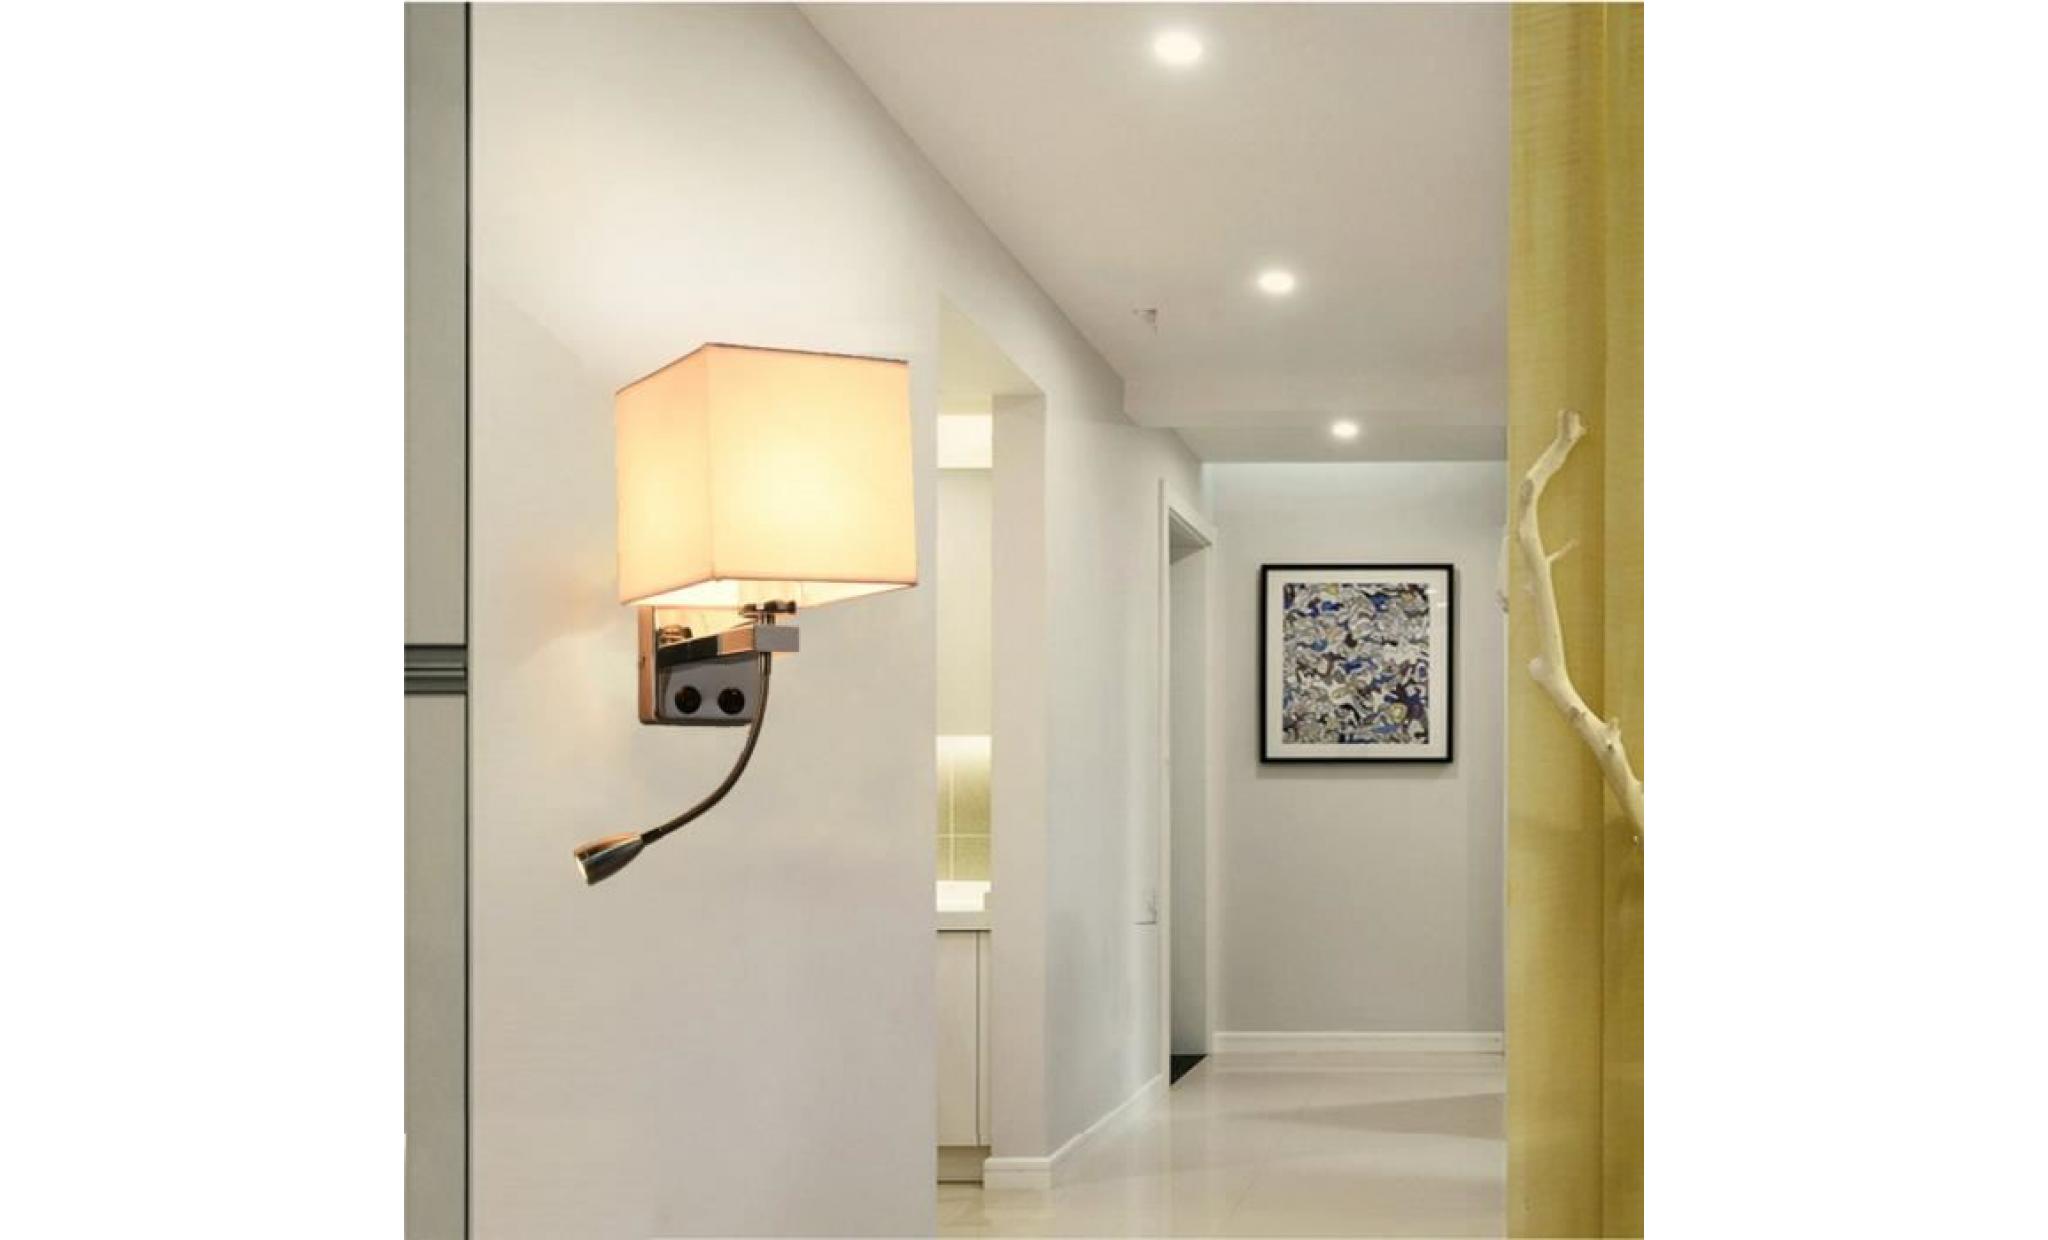 neufu blanc applique murale interieur moderne led applique abat jour veilleuse chevet décor hôtel chambre pas cher